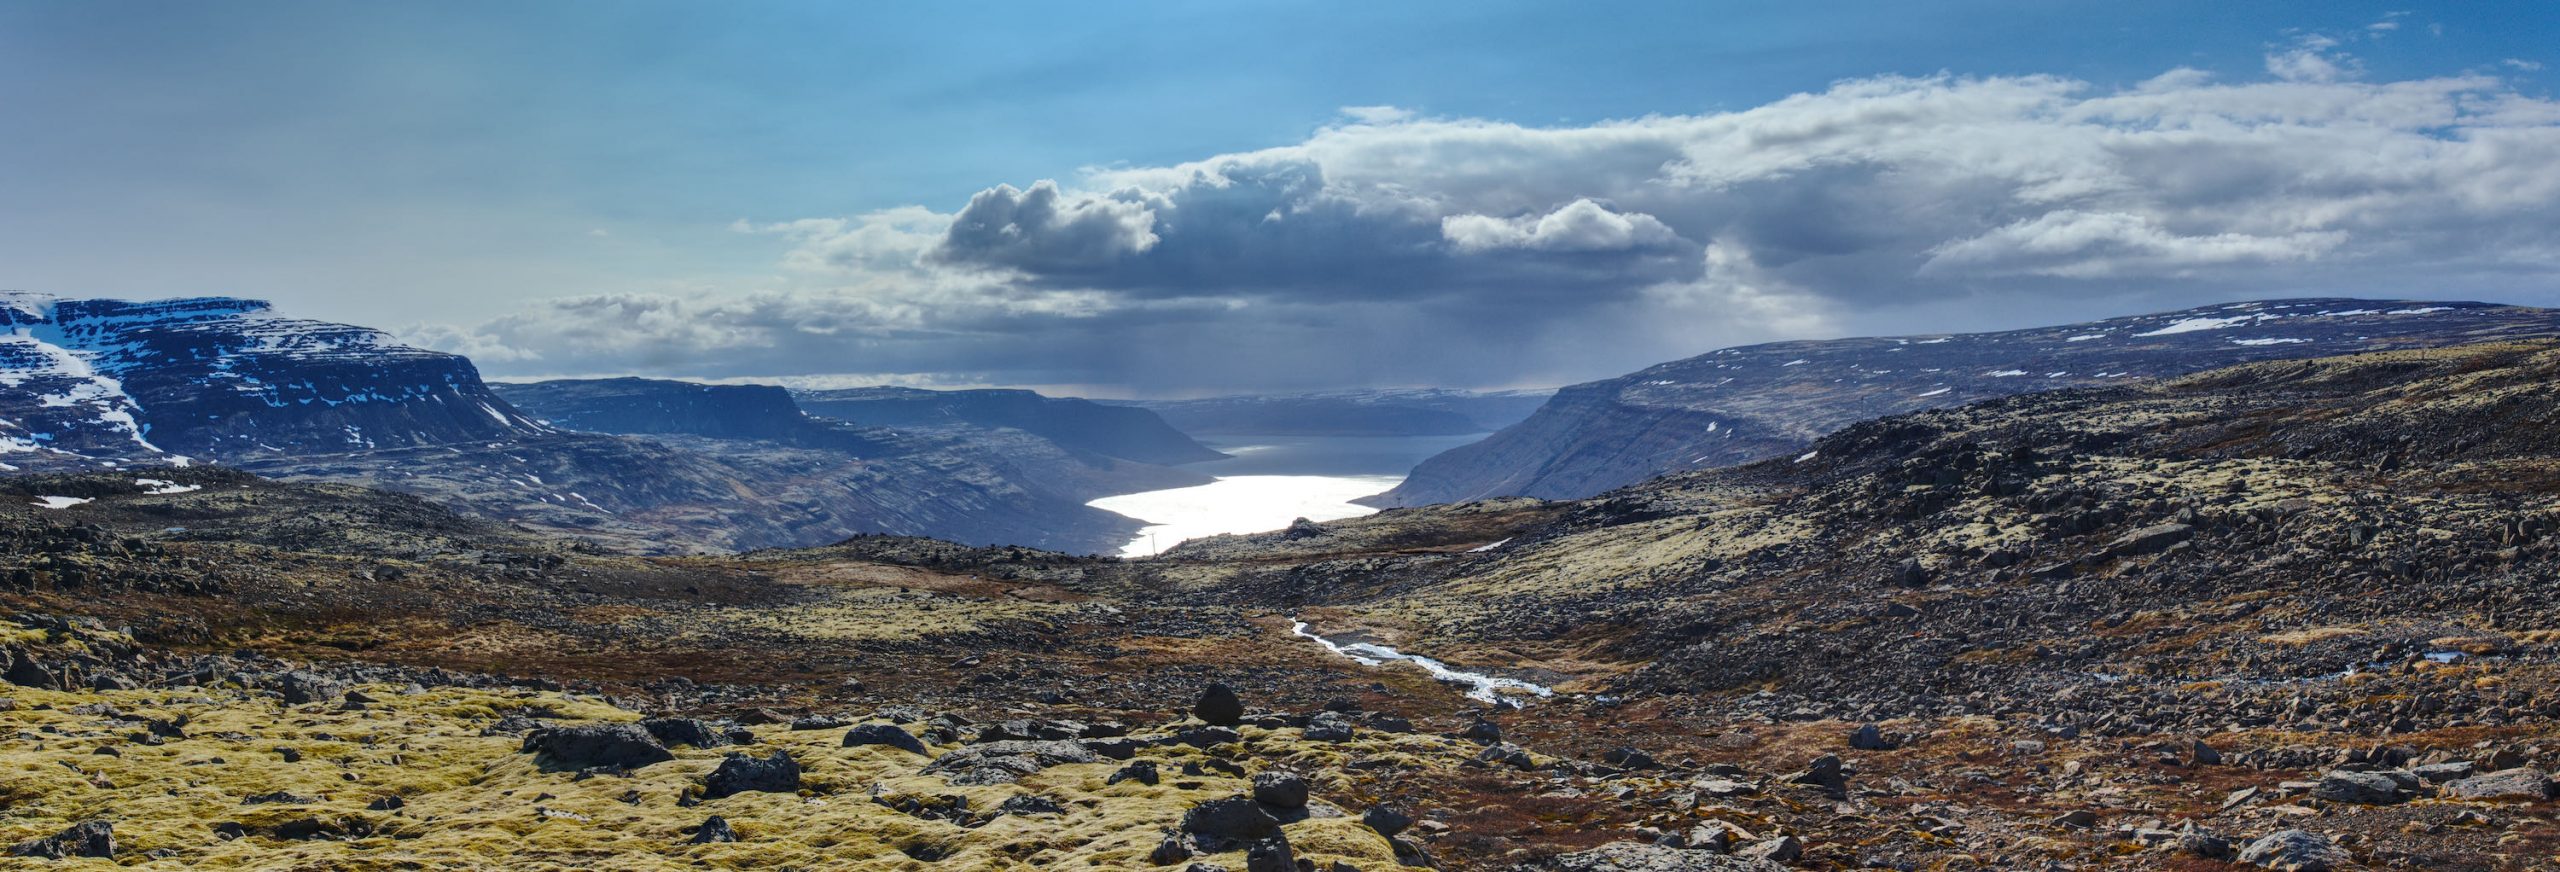 Wir haben uns verliebt: Islands unglaubliche Westfjorde (Teil 1)